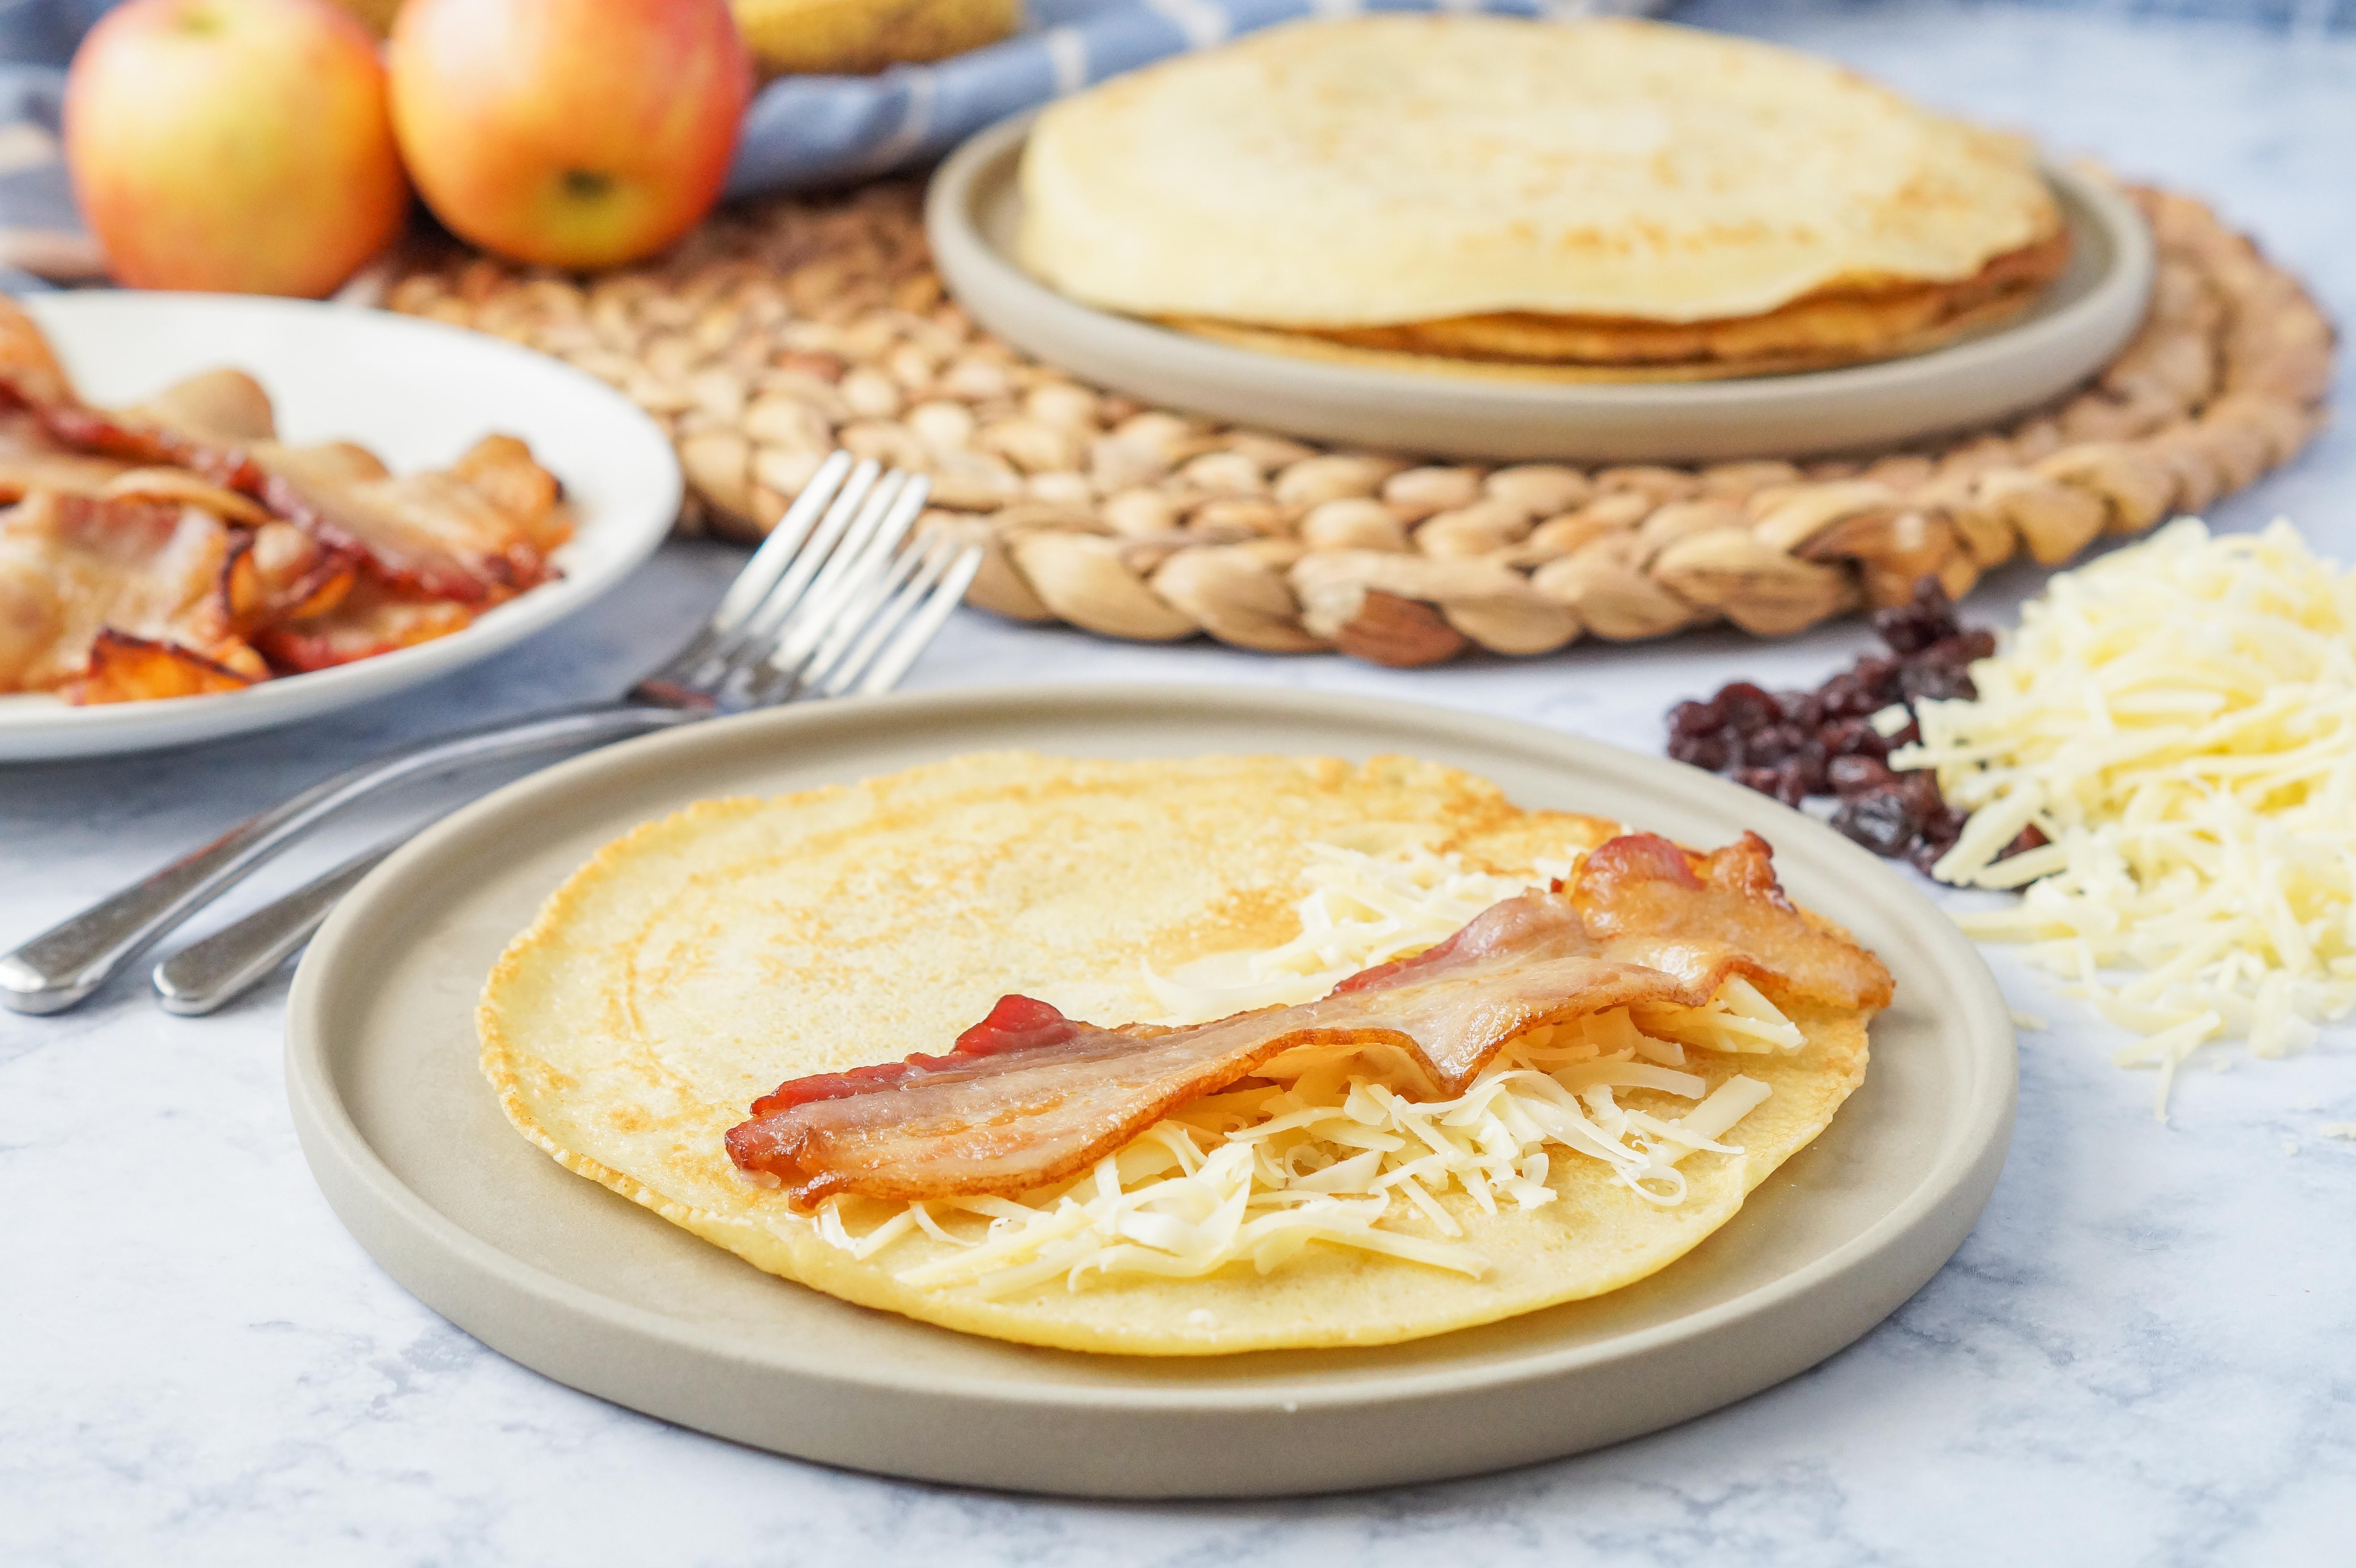 Pannenkoeken: Dutch Pancakes Recipe - SoFabFood